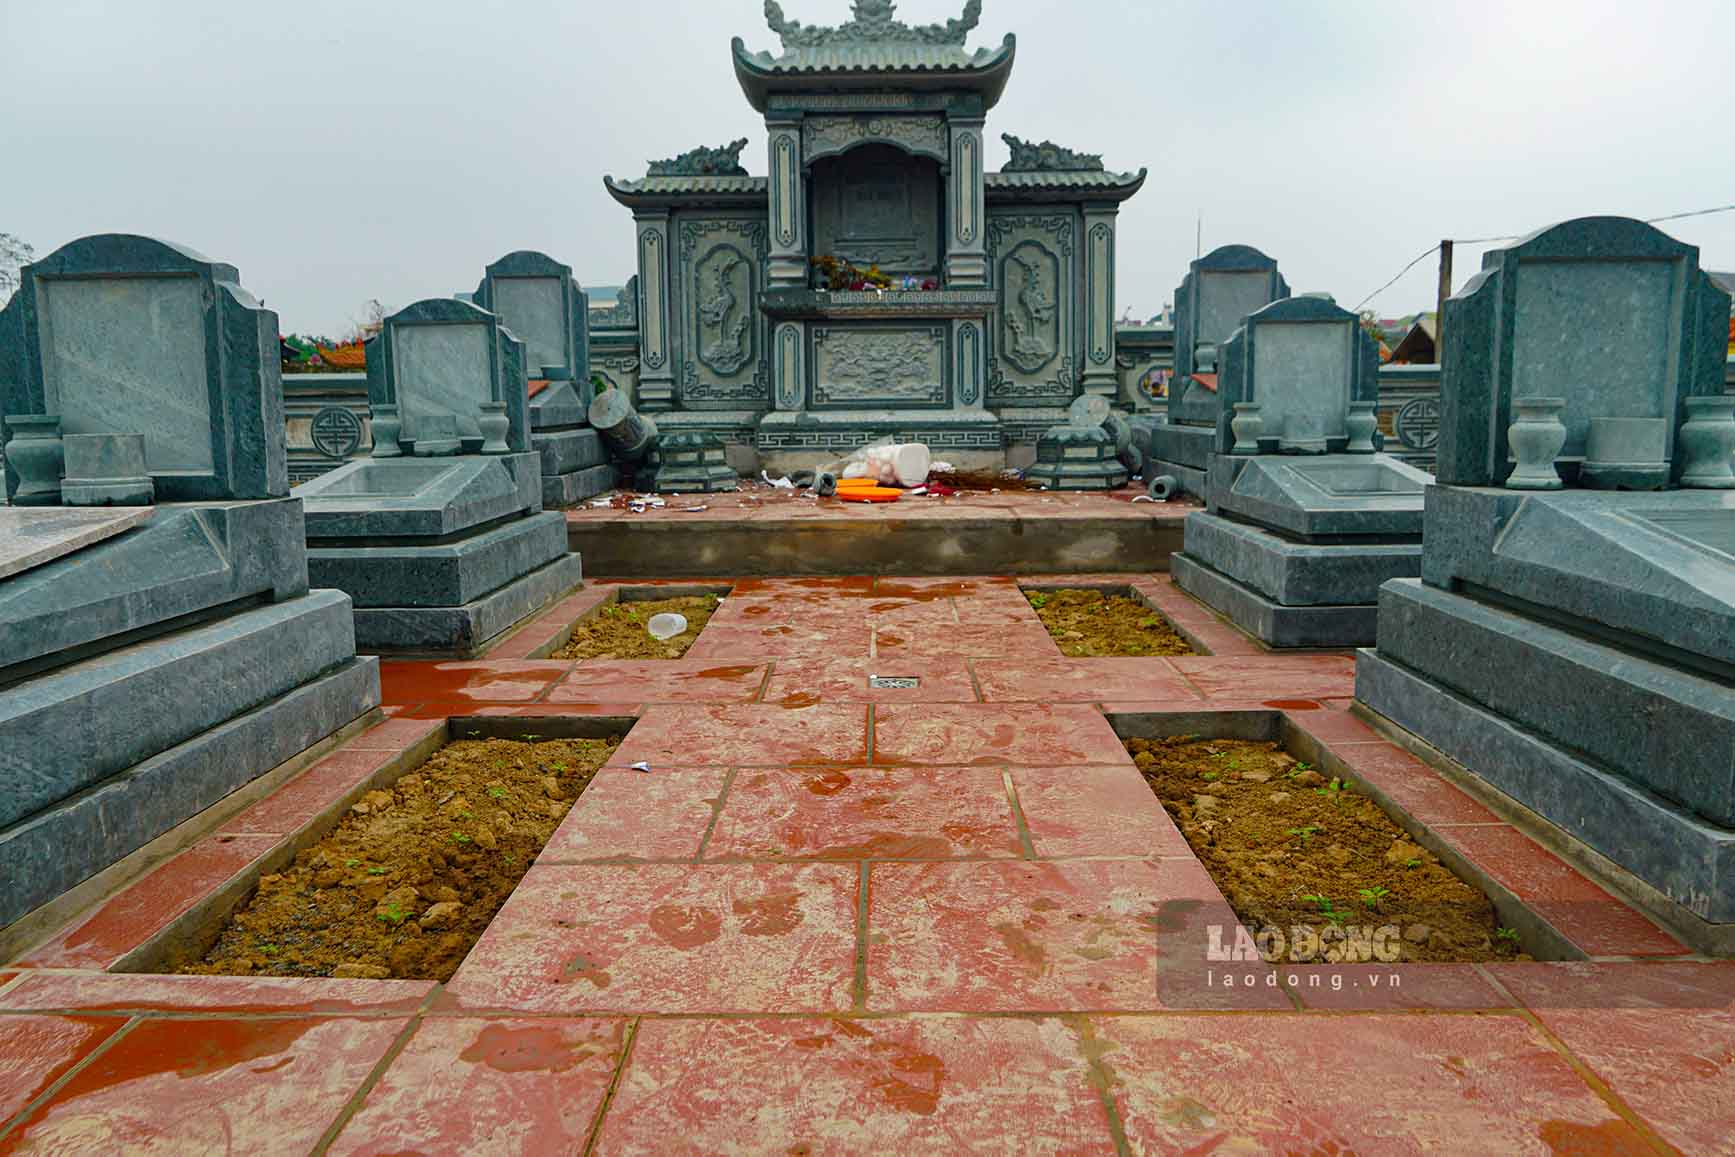 Ông Nguyễn Hữu Quân – Tổ trưởng Tổ dịch vụ nghĩa trang Tây Mỗ cho biết, sự việc được phát hiện ngày 16.2, tức mùng 7 Tết Nguyên đán Giáp Thìn. Ban đầu chỉ phát hiện khoảng trên dưới 10 ngôi mộ bị phá. 